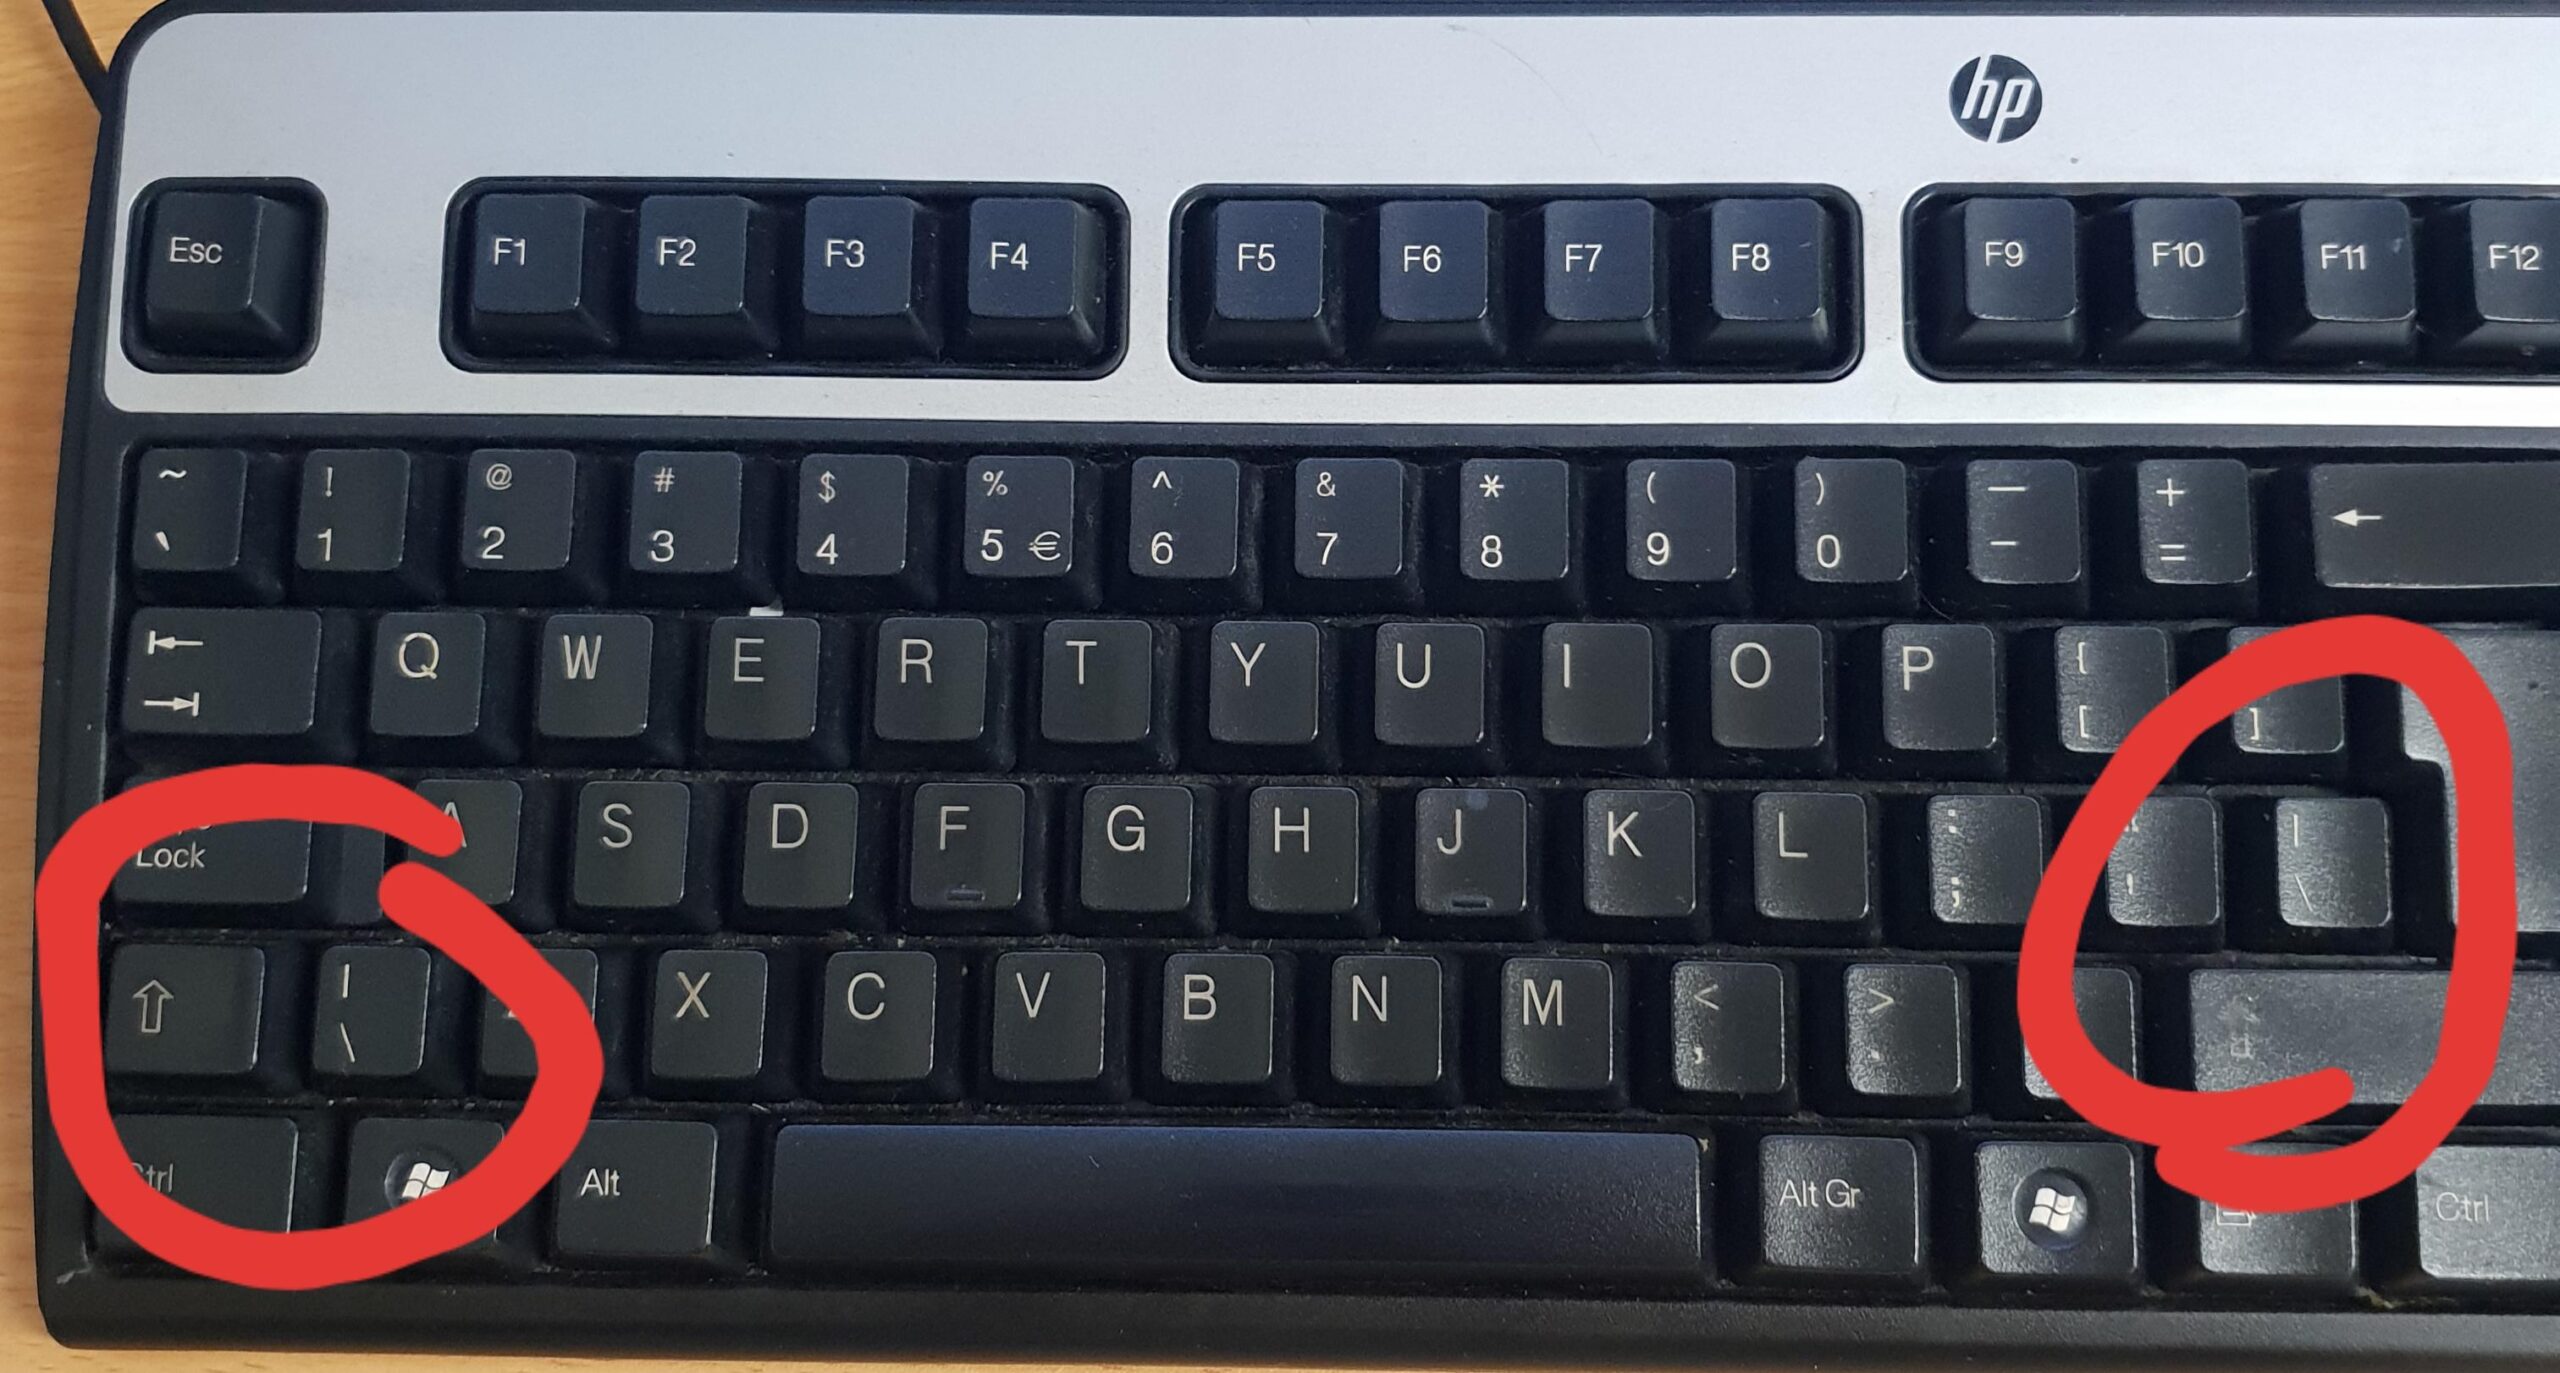 Where is Backslash on Keyboard?